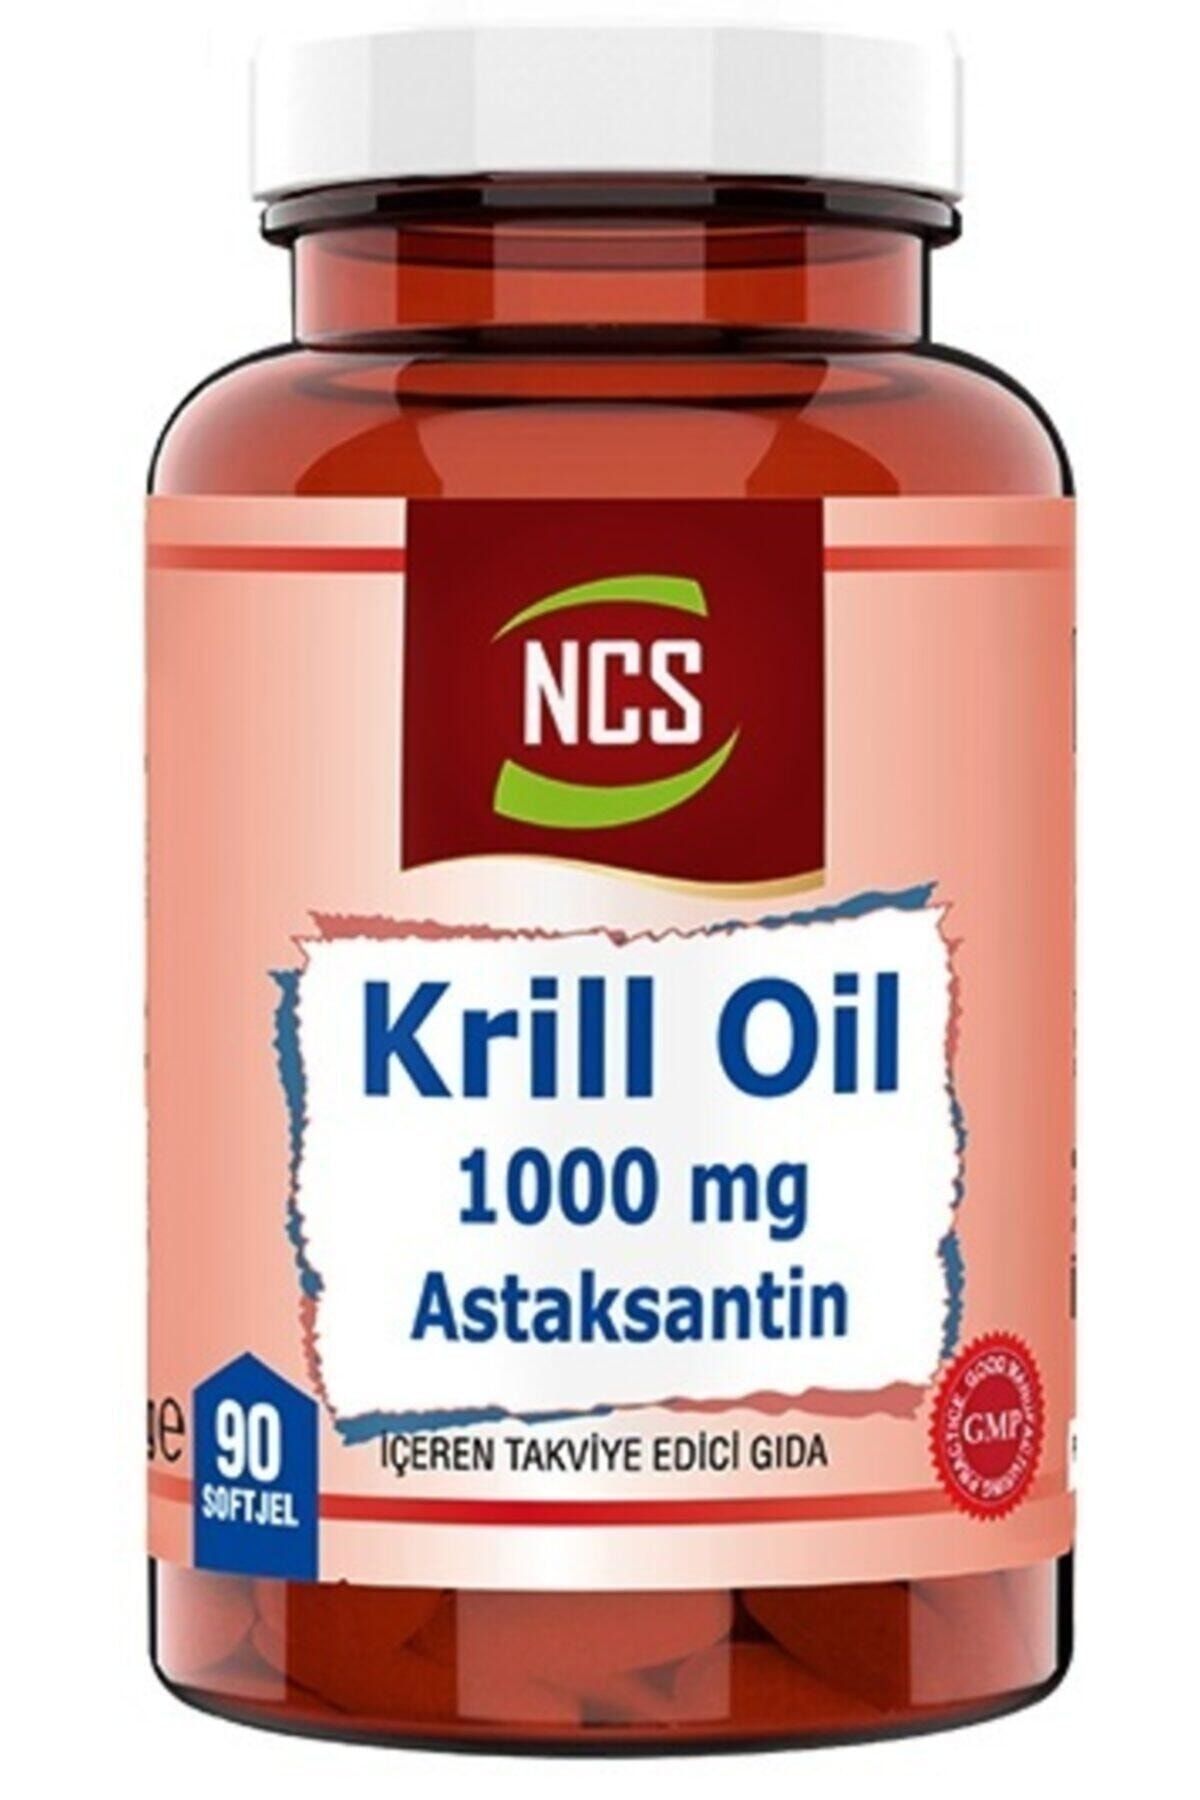 Ncs Krill Oil 1000 mg Astaksantin 2 Mg 90 Softgel